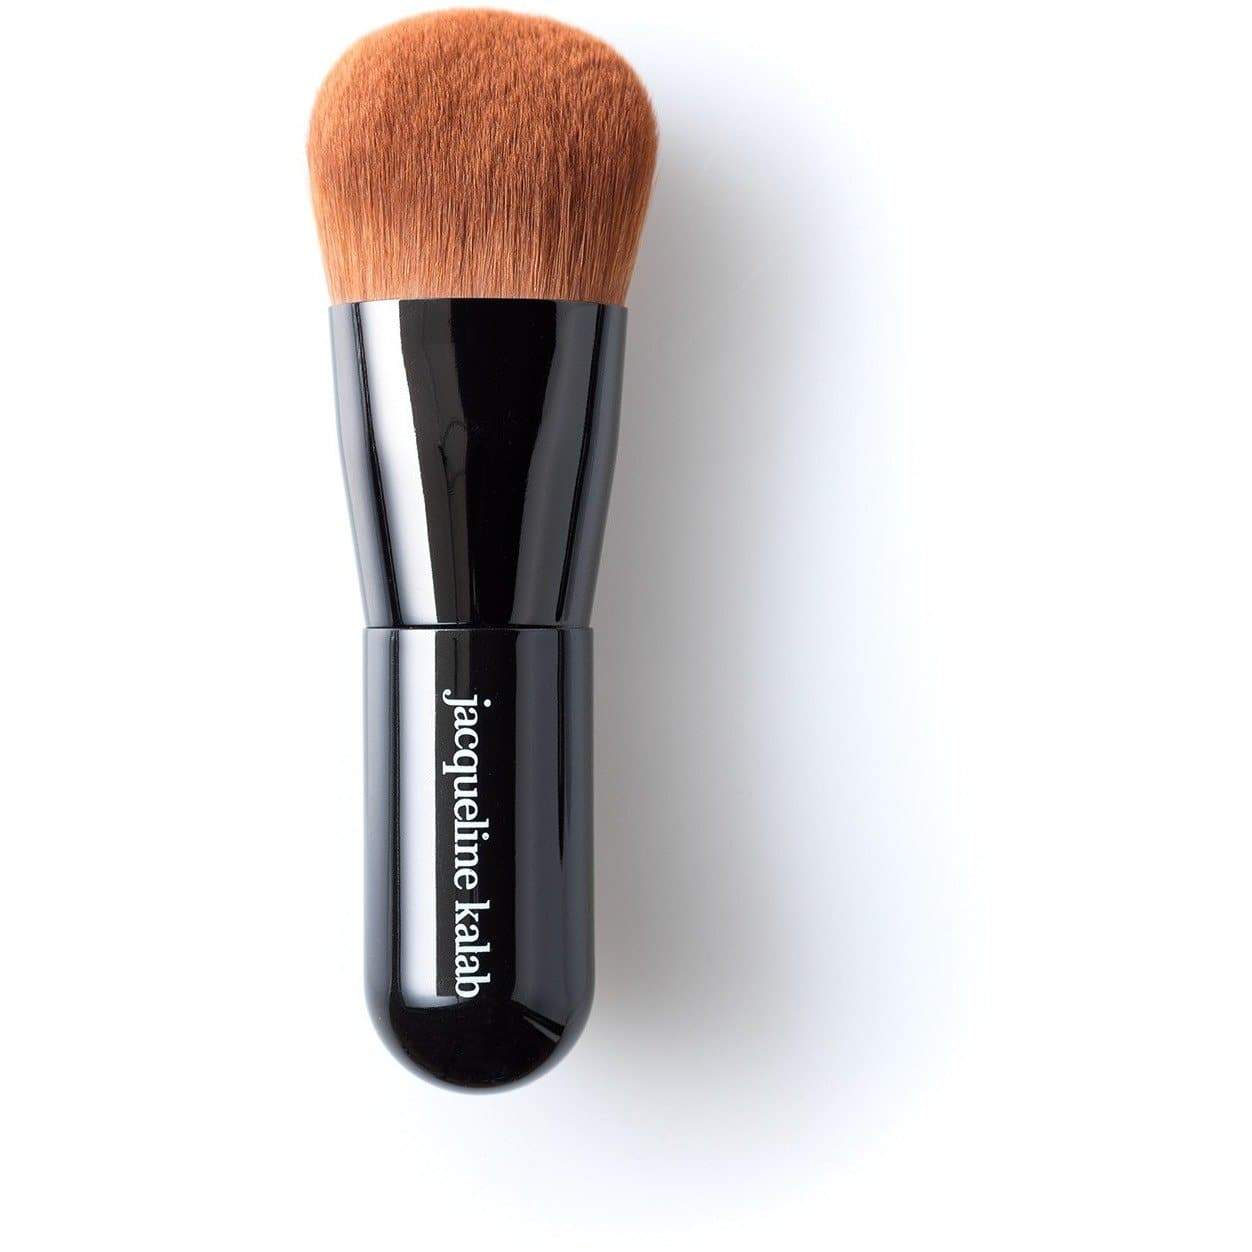 Magic Foundation Brush - the Most Addictive, Useful, Multi-use Makeup Brush  by Jacqueline Kalab